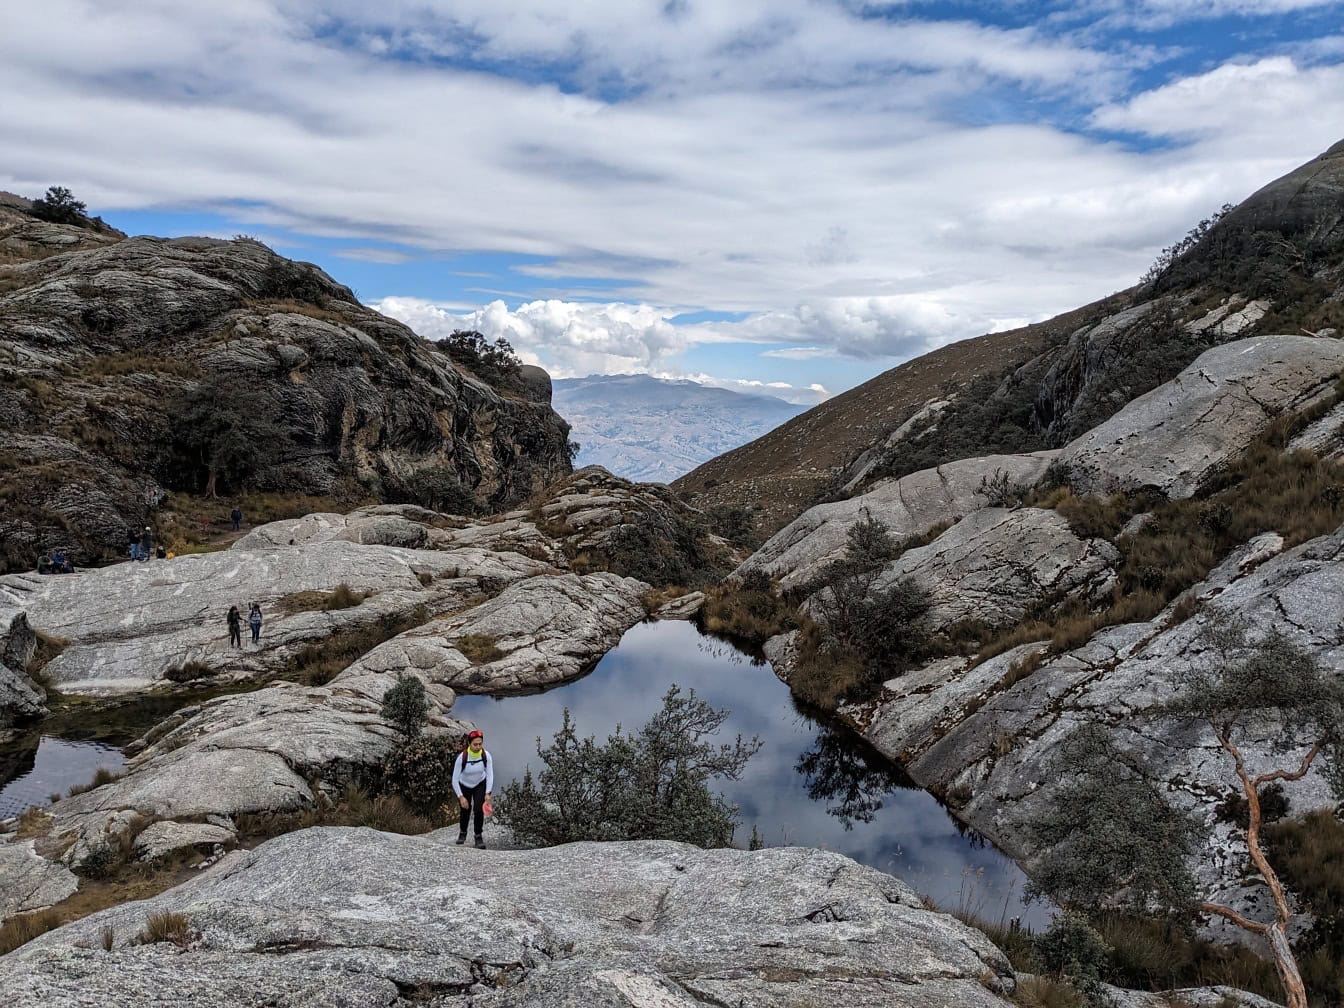 페루의 자연 공원에 있는 산 한가운데에 있는 작은 산 호수의 바위 기슭에 한 산악인이 서 있다